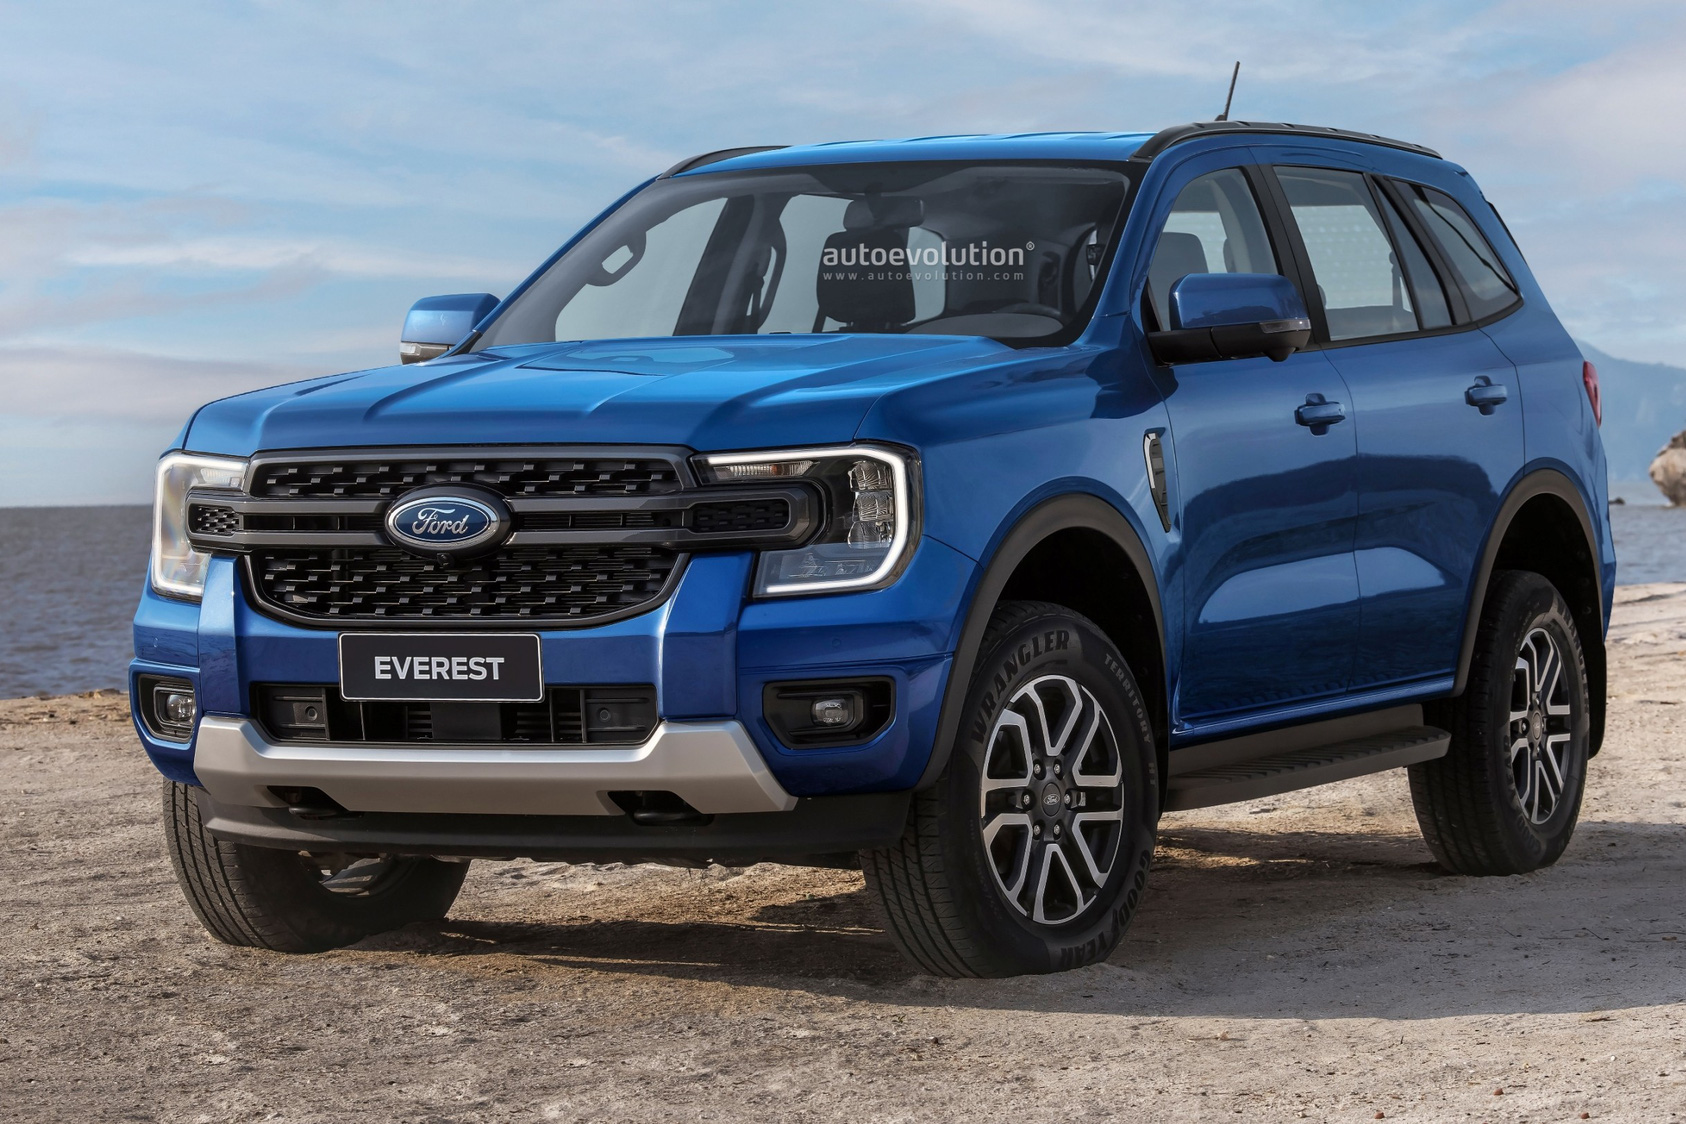 Phác thảo thiết kế Ford Everest và Escape mới dựa trên Ranger thế hệ mới vừa được ra mắt